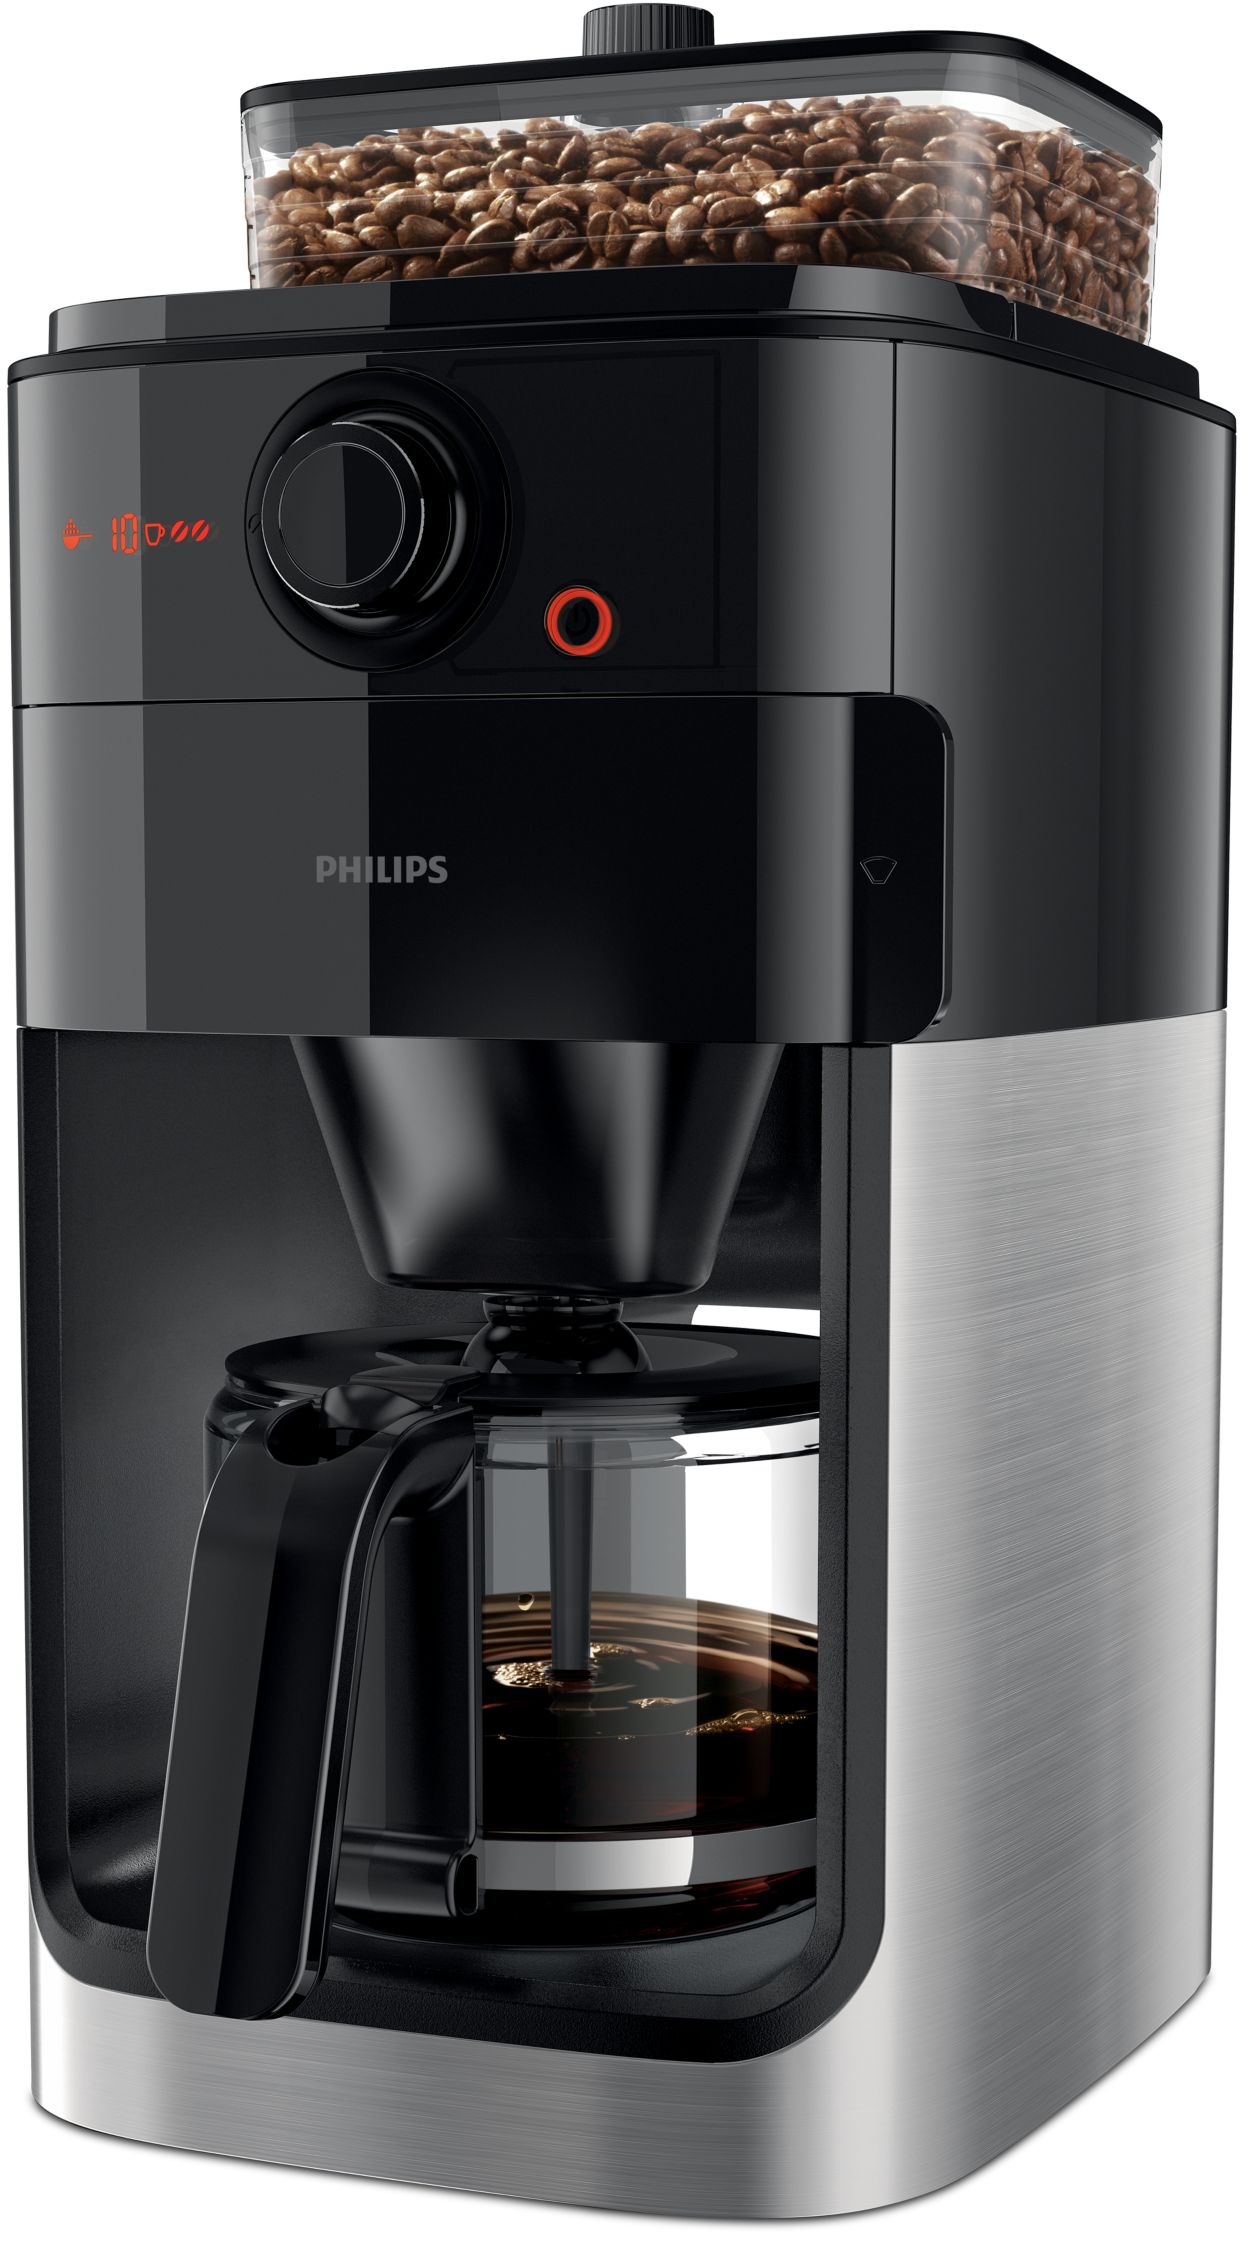 Cafetera Philips Grind & Brew HD7767 automática negra y metal